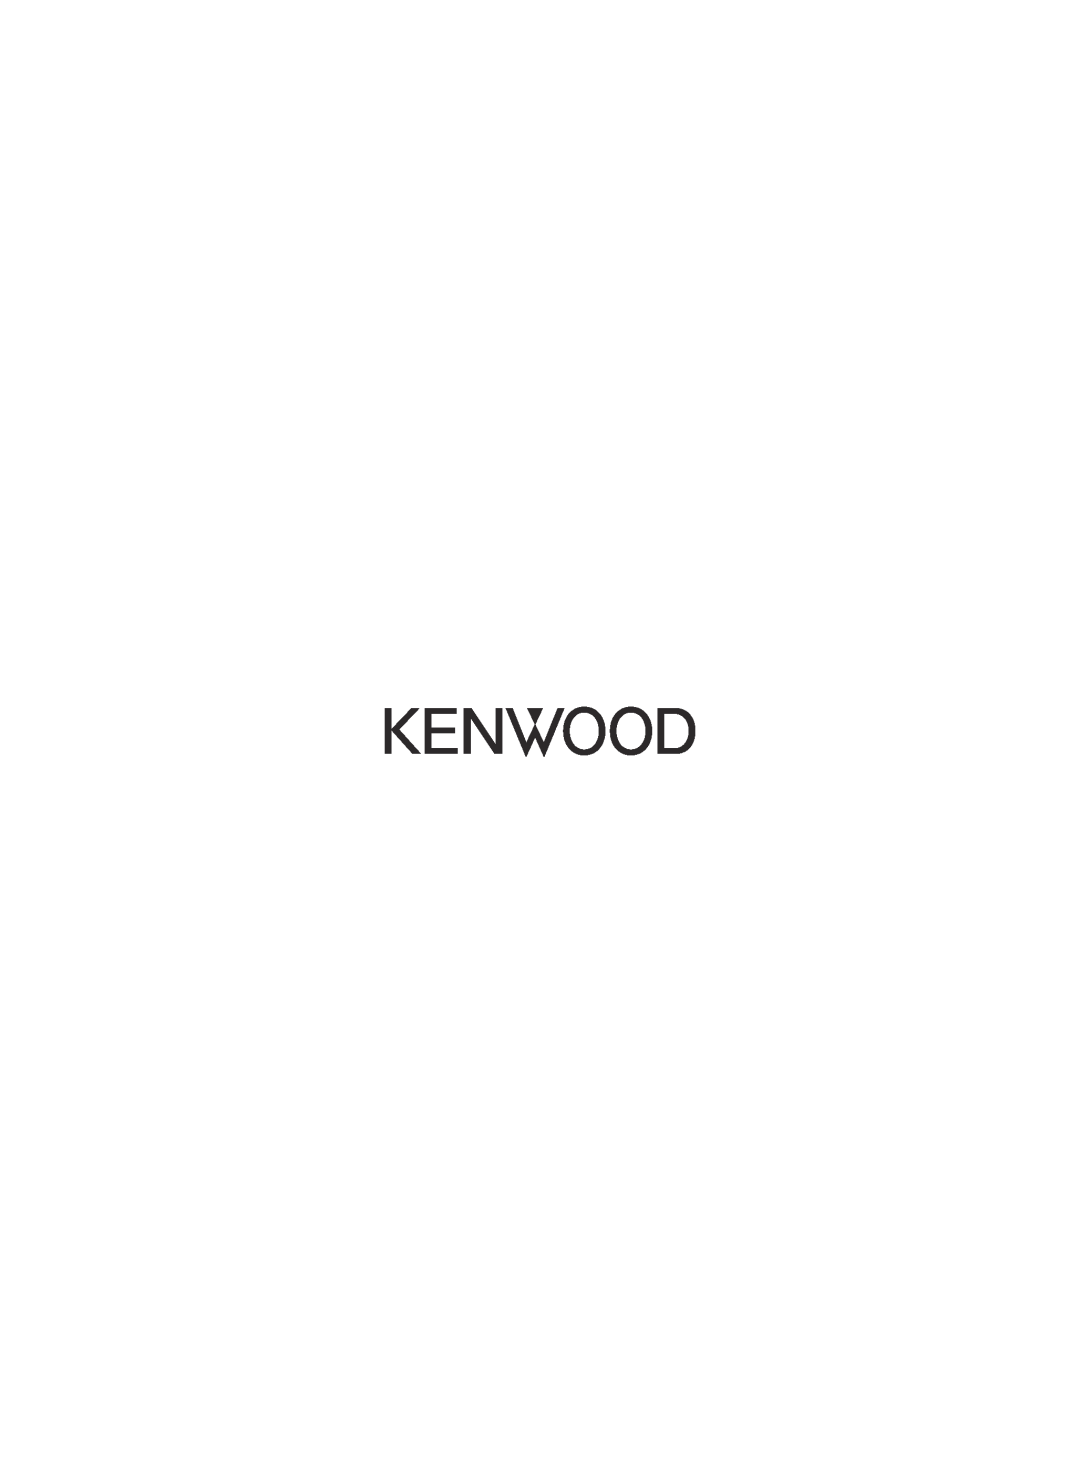 Kenwood TM-V71E, TM-V71A instruction manual 